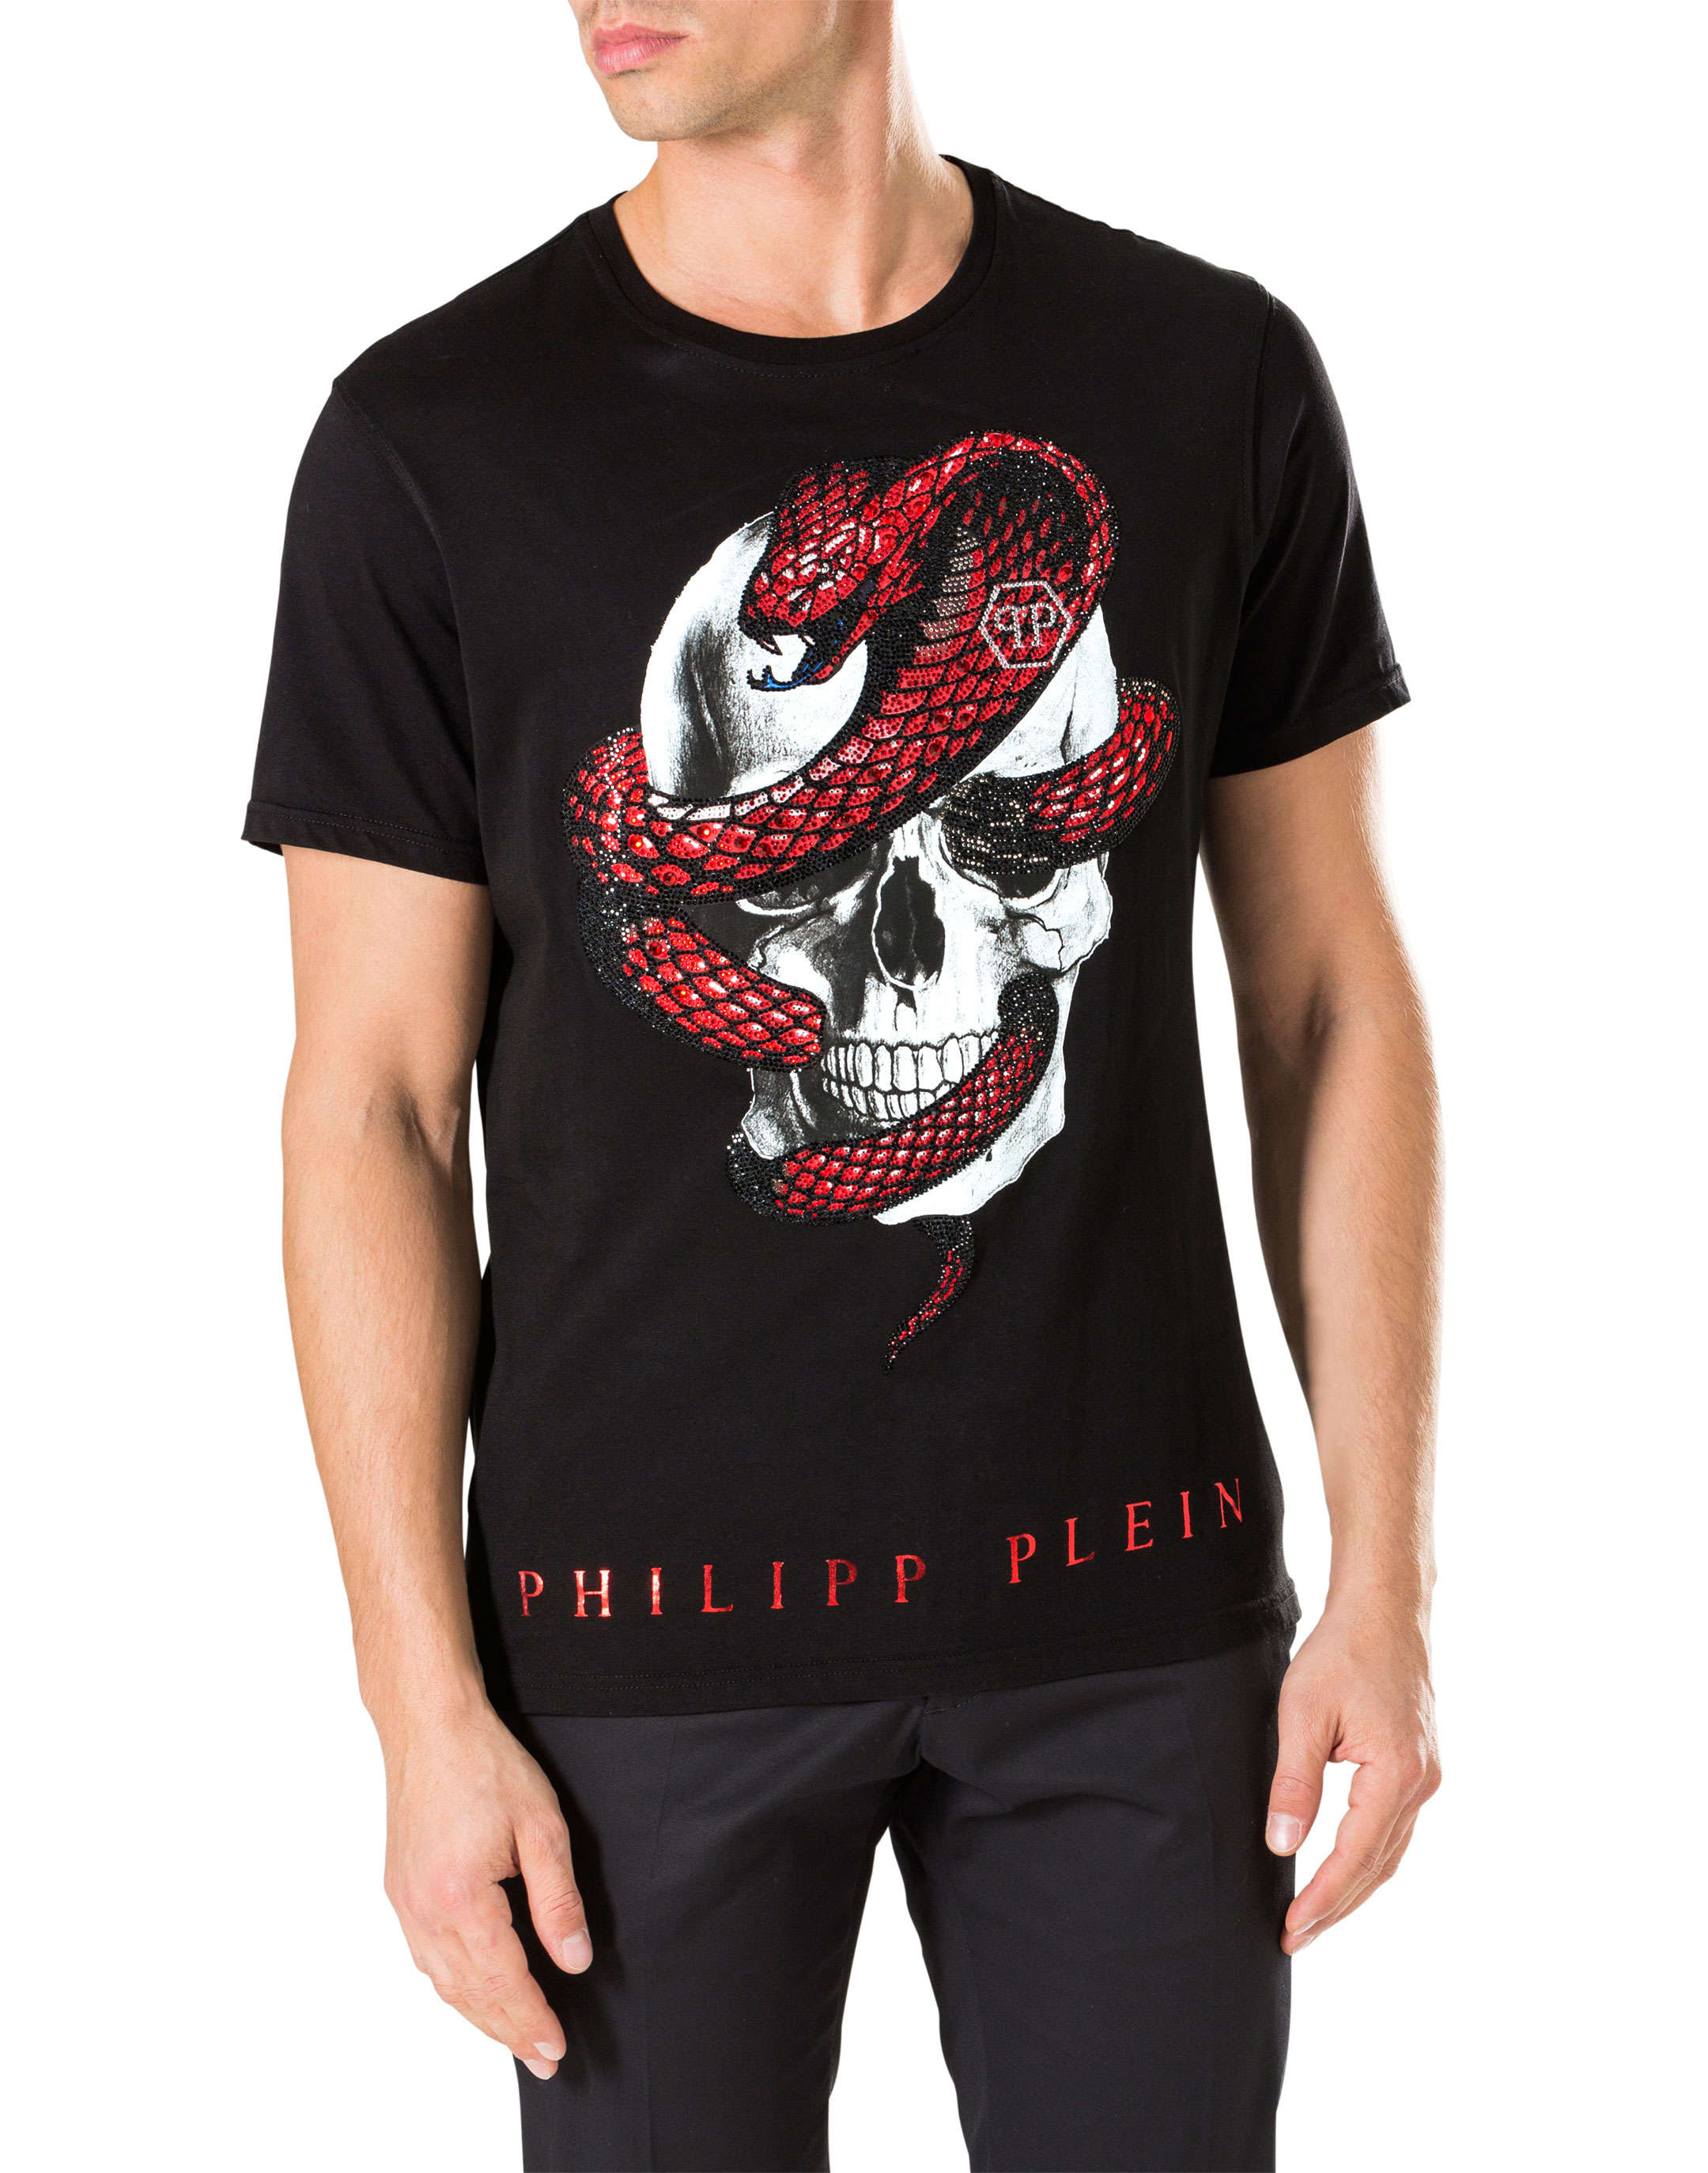 phillips plein t shirt